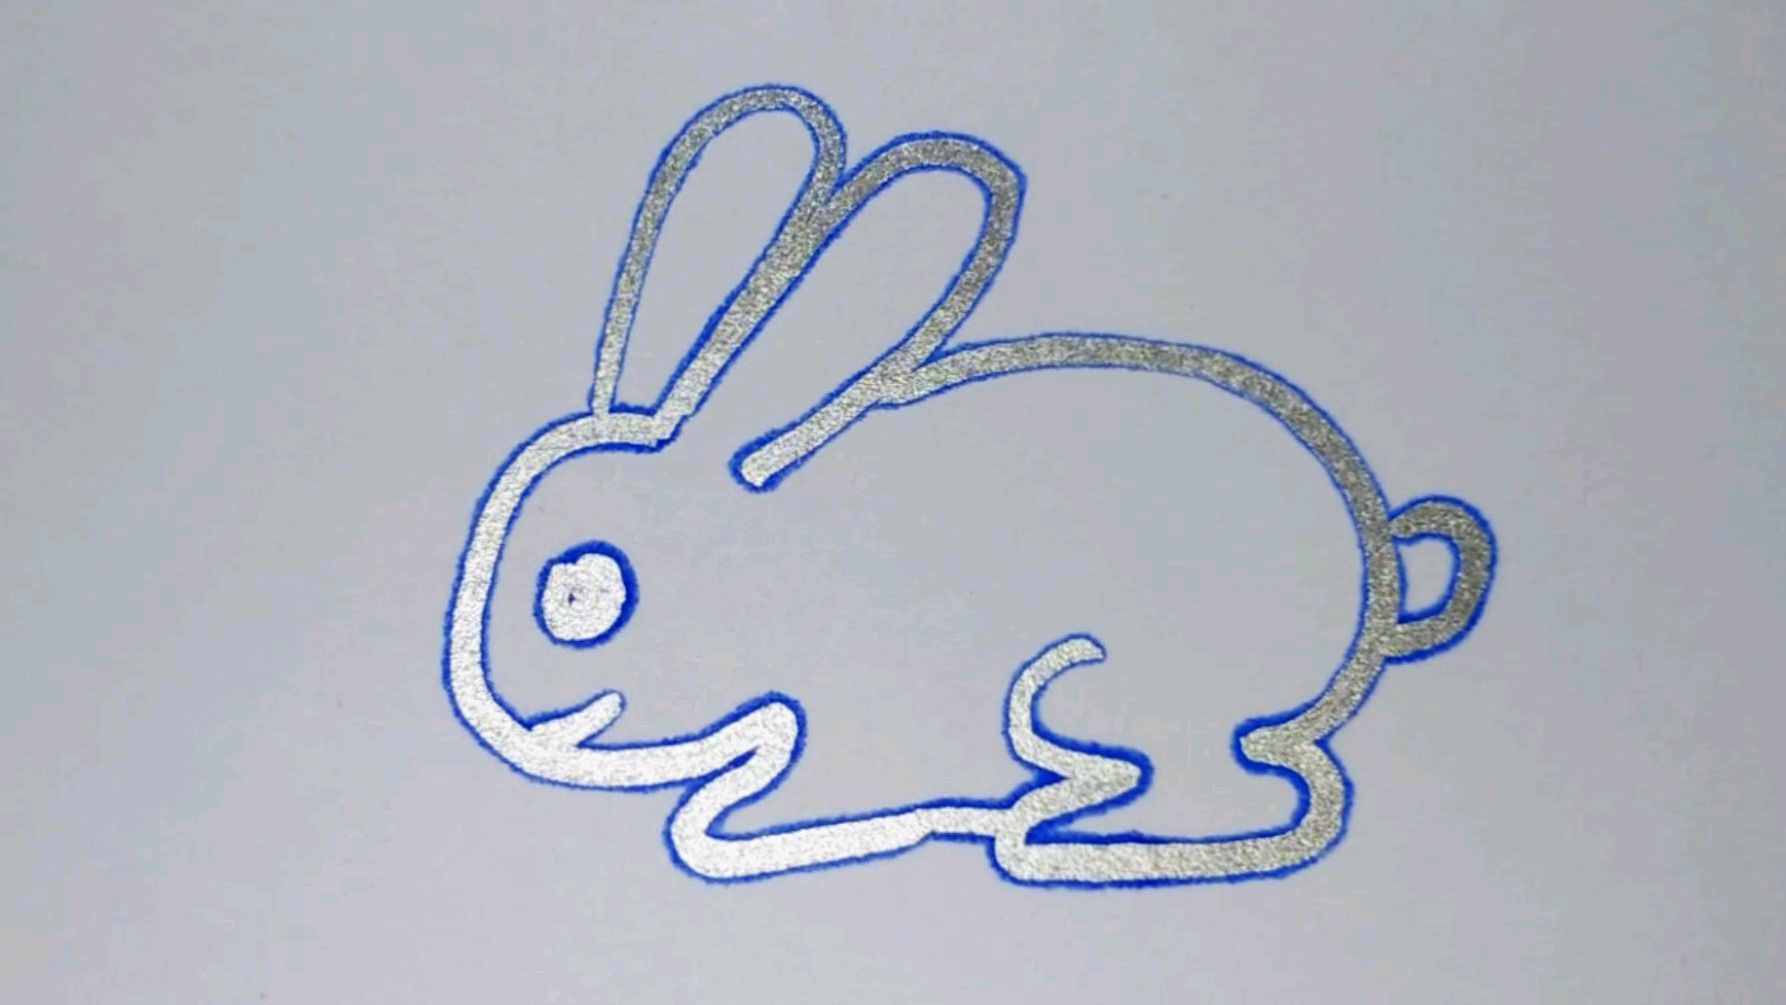 卡通小白兔简笔画 - 有点网 - 好手艺